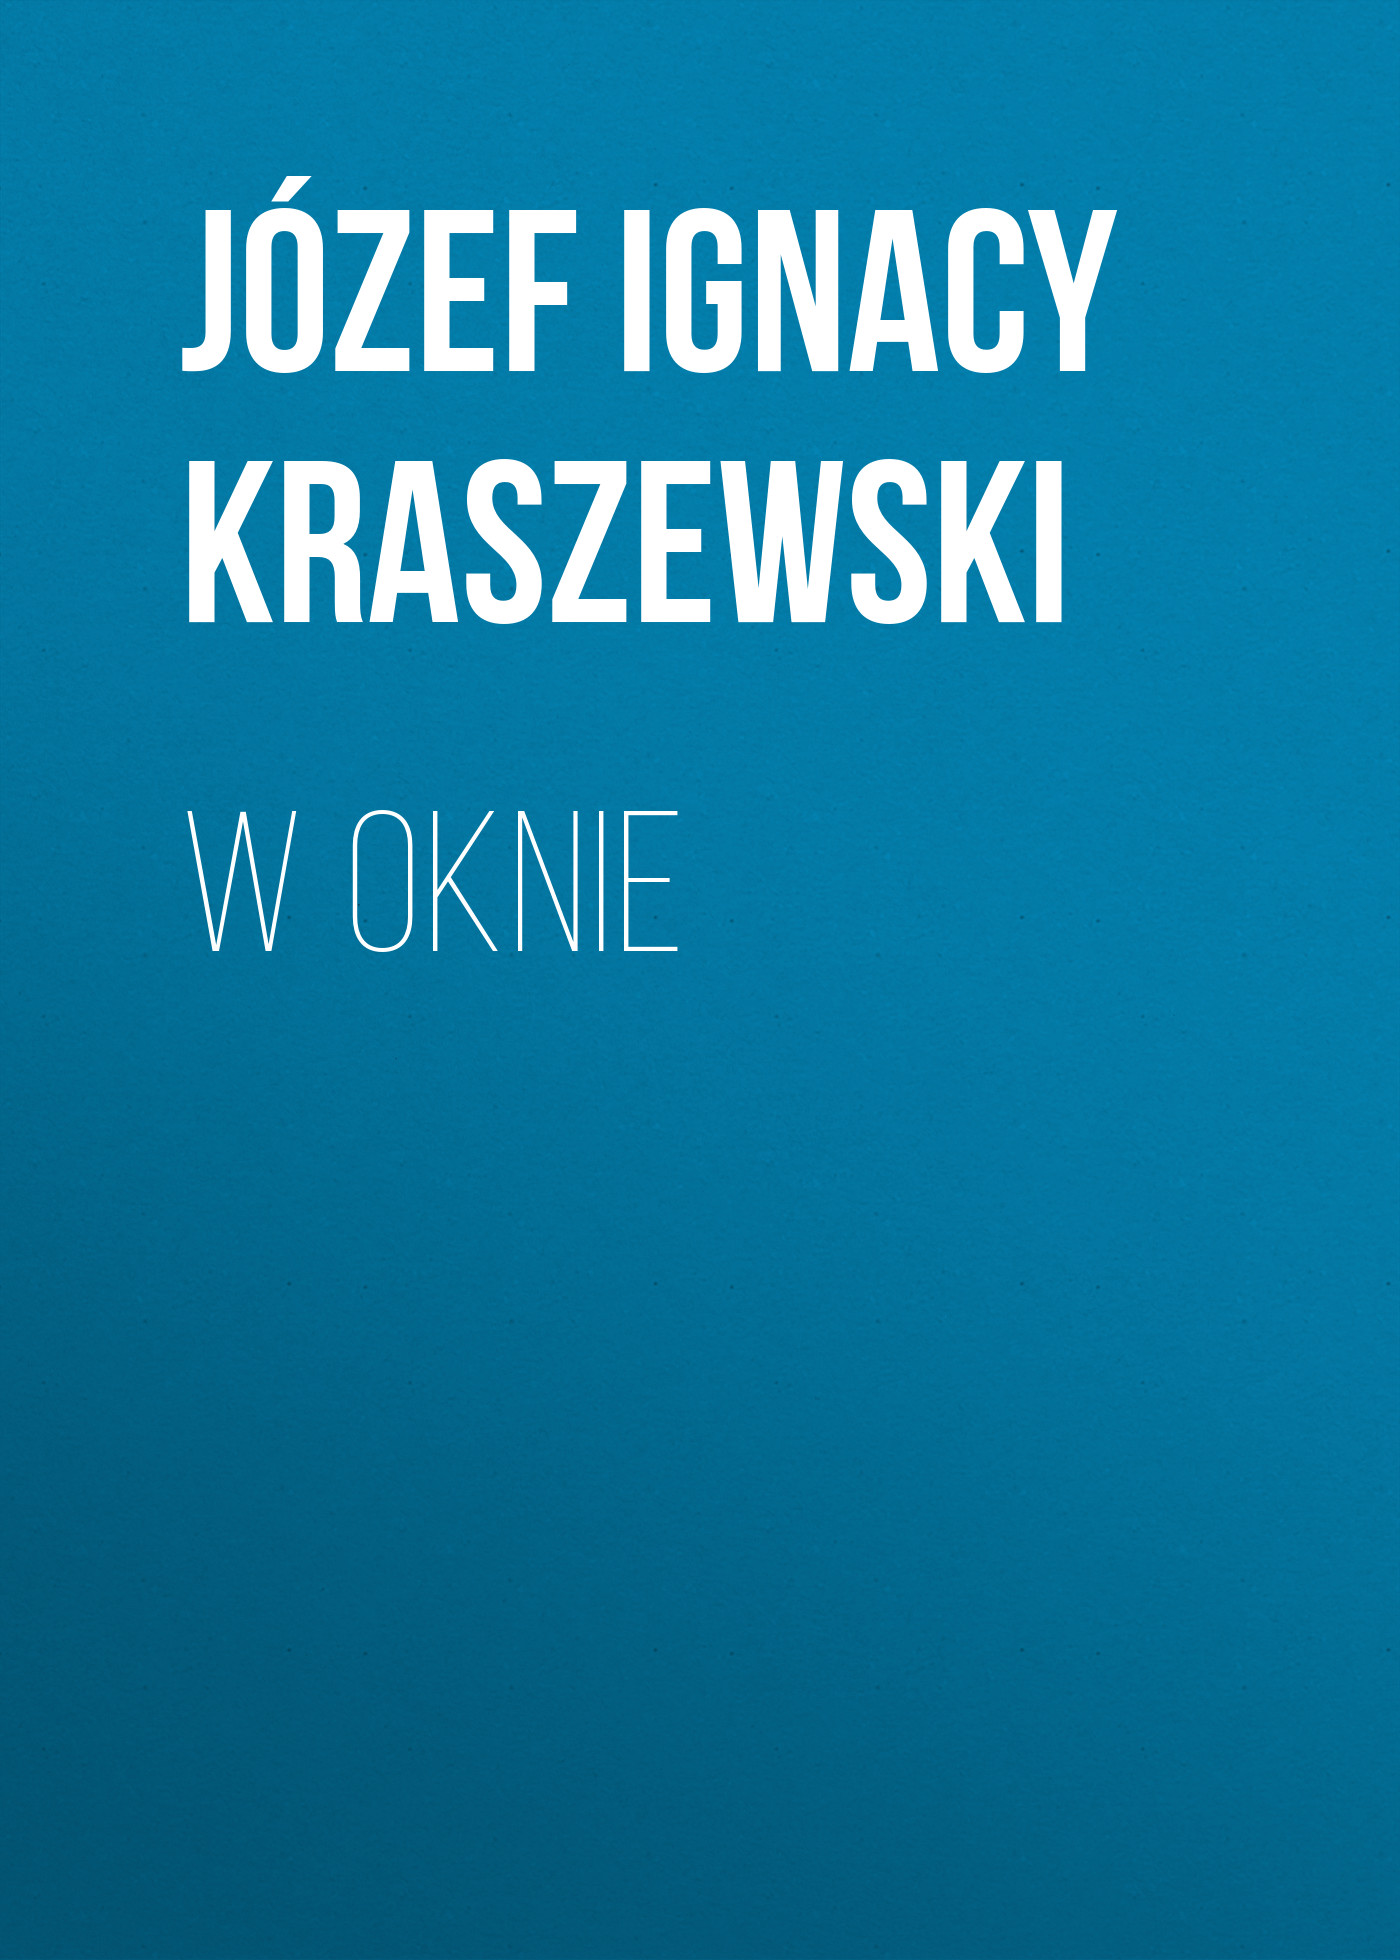 Скачать W oknie - Józef Ignacy Kraszewski